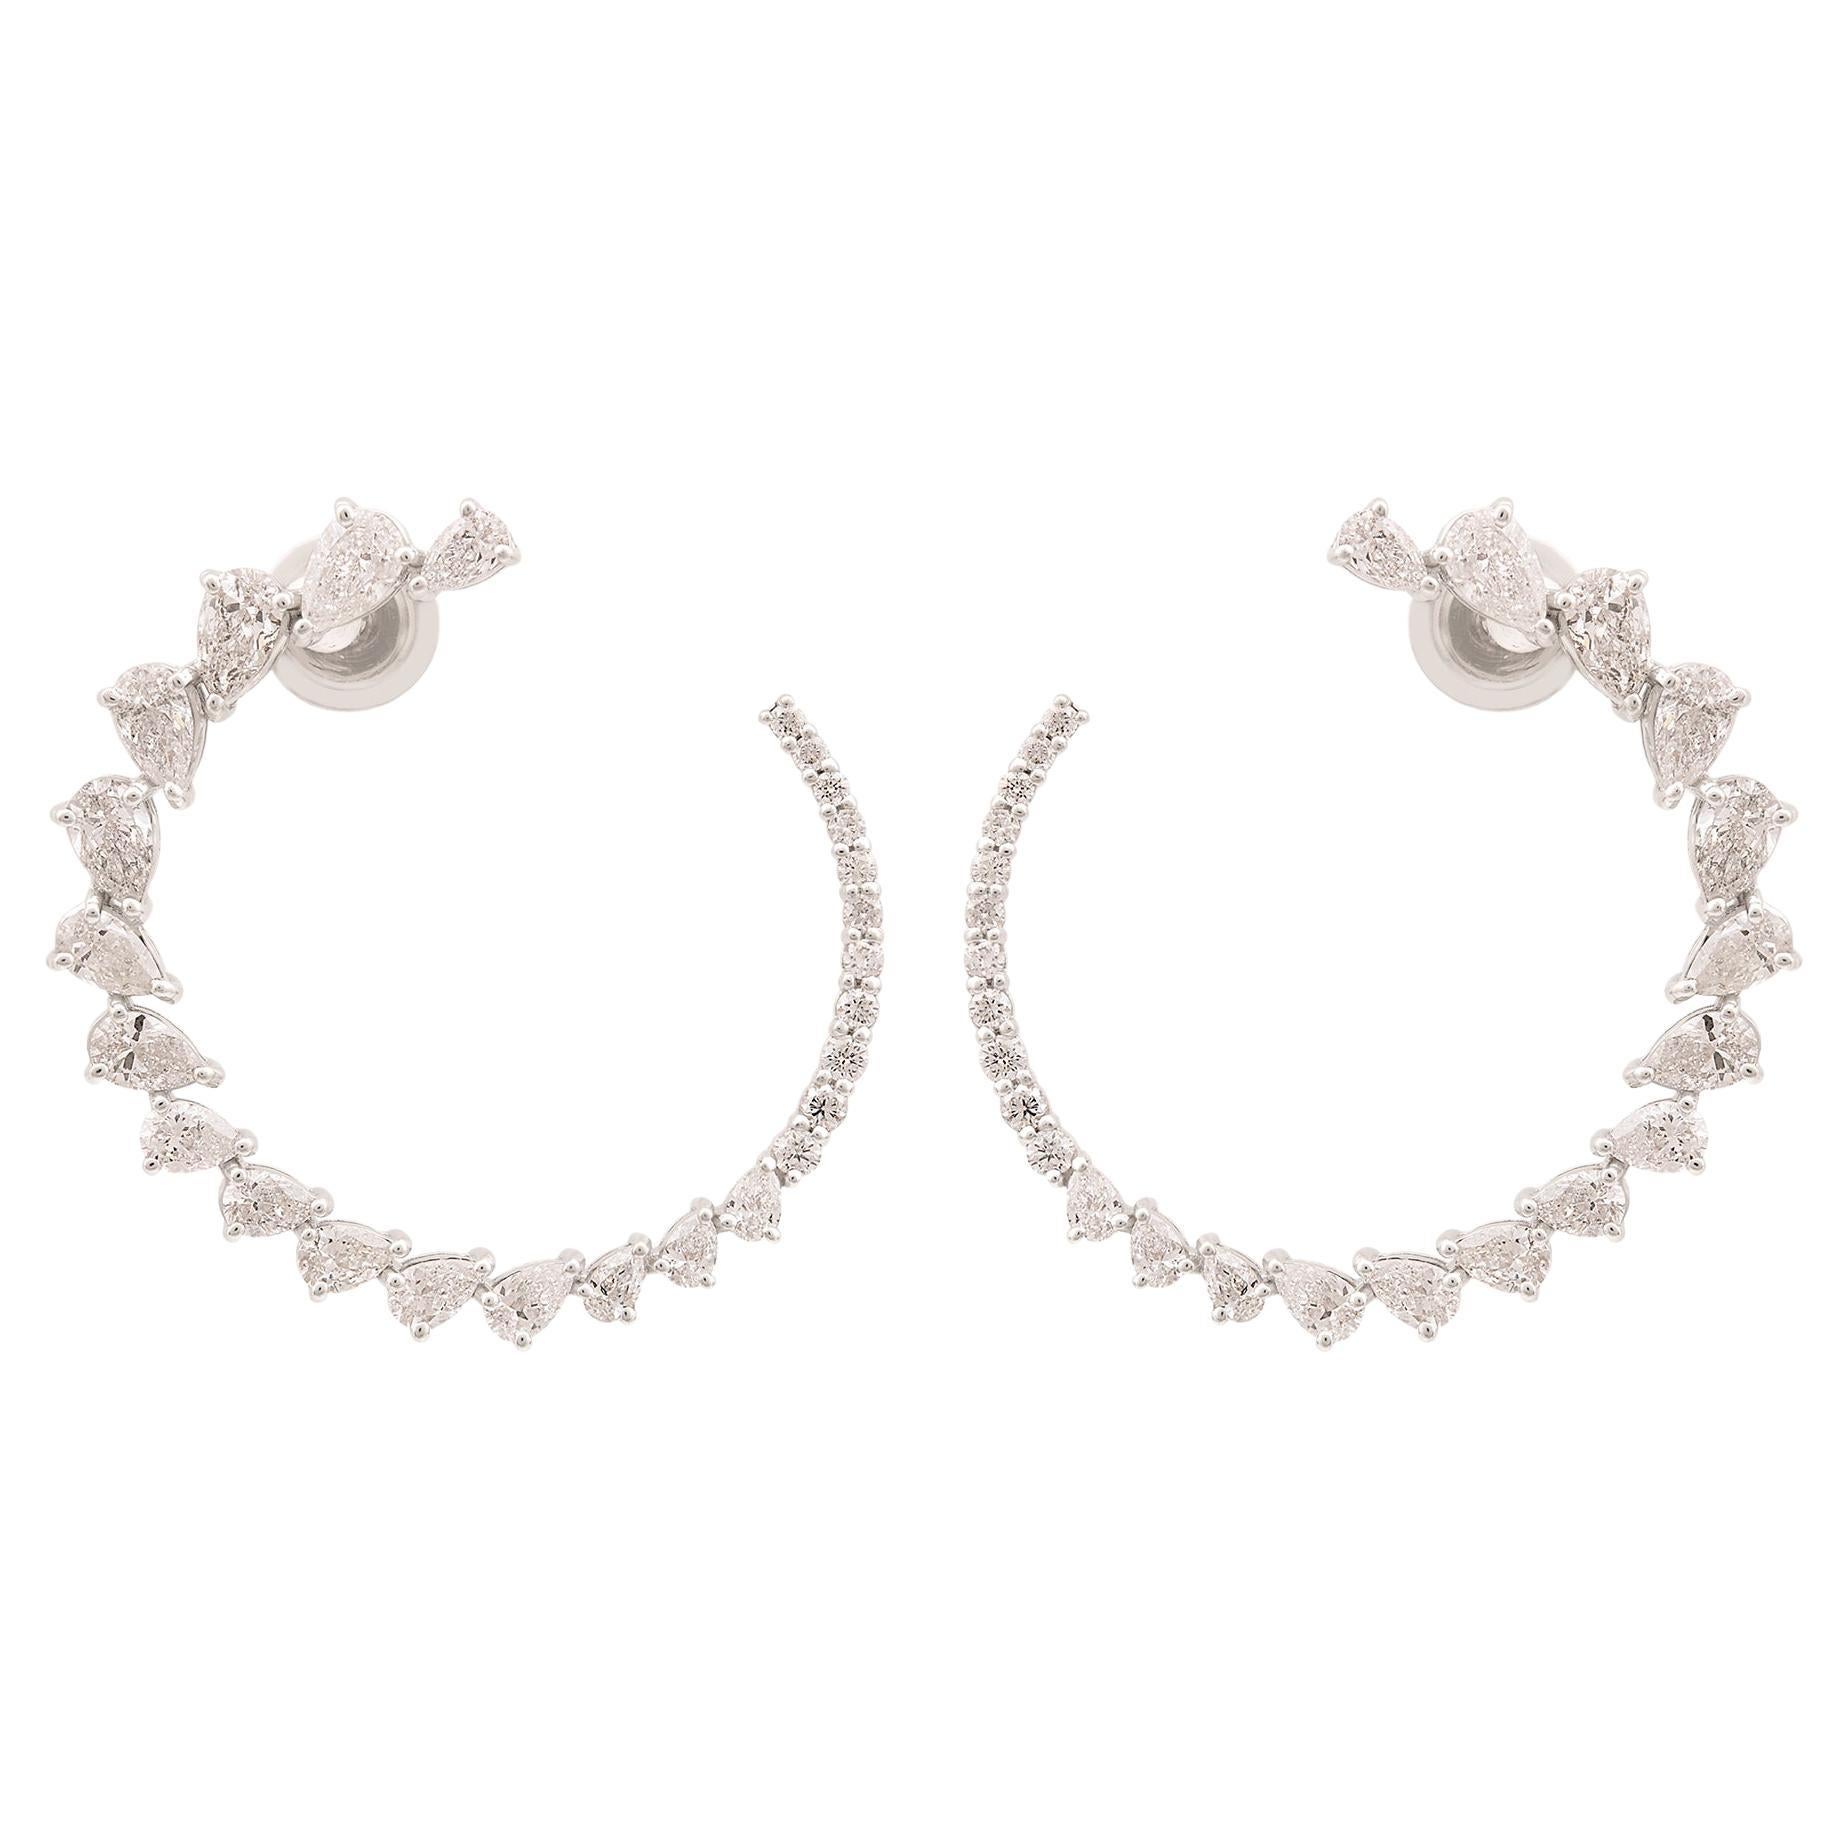 3.9 Carat Pear Diamond Crescent Moon Hoop Earrings 18k White Gold Fine Jewelry